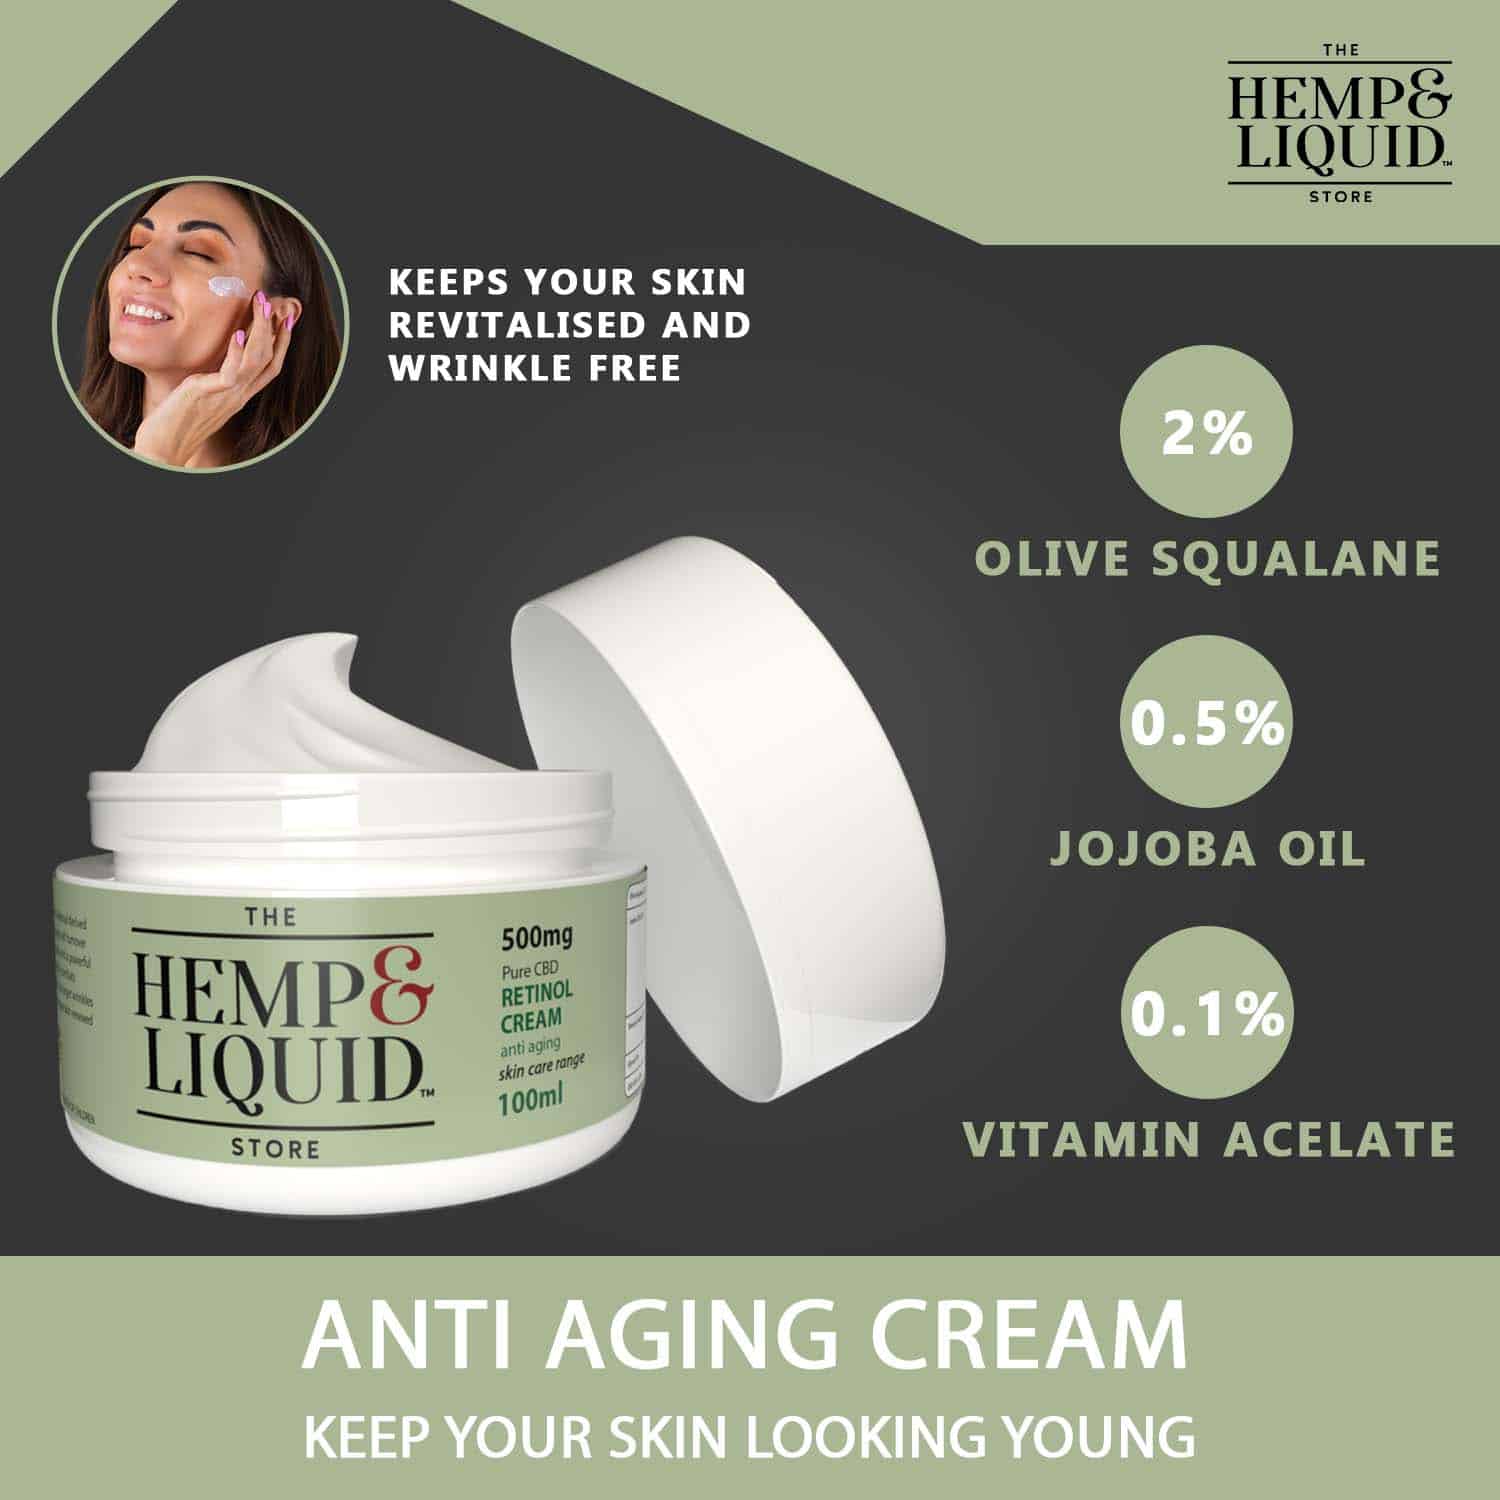 Anti Aging Cream Infographic